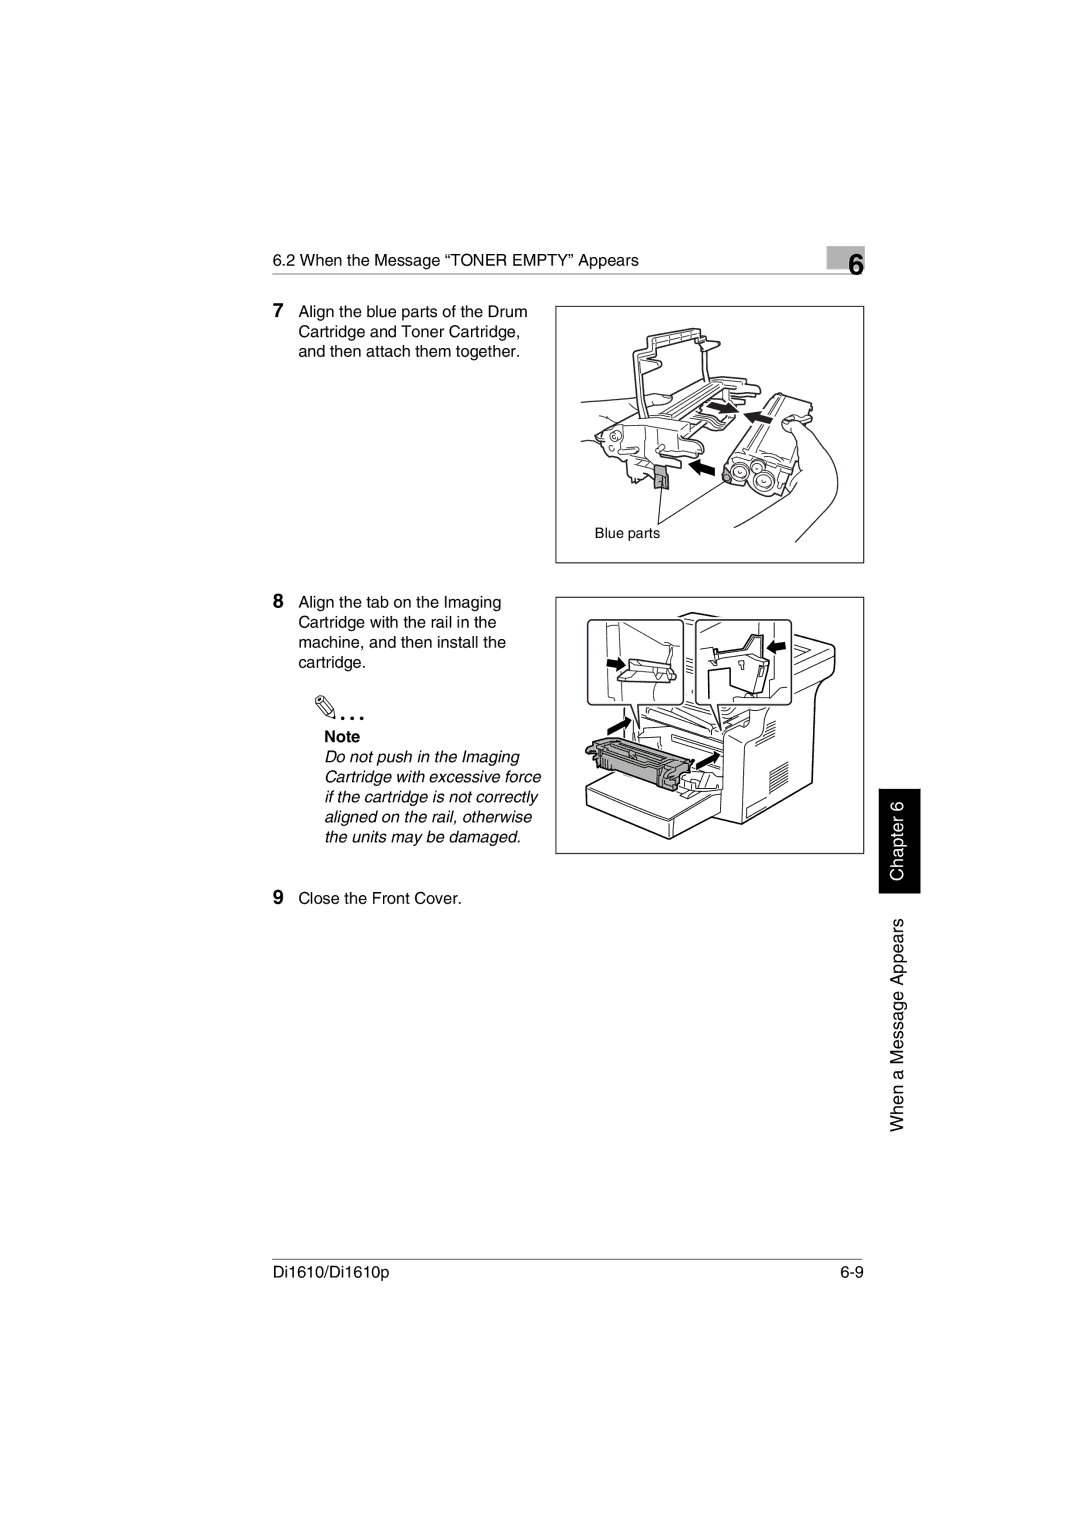 Konica Minolta Di1610p user manual Close the Front Cover 